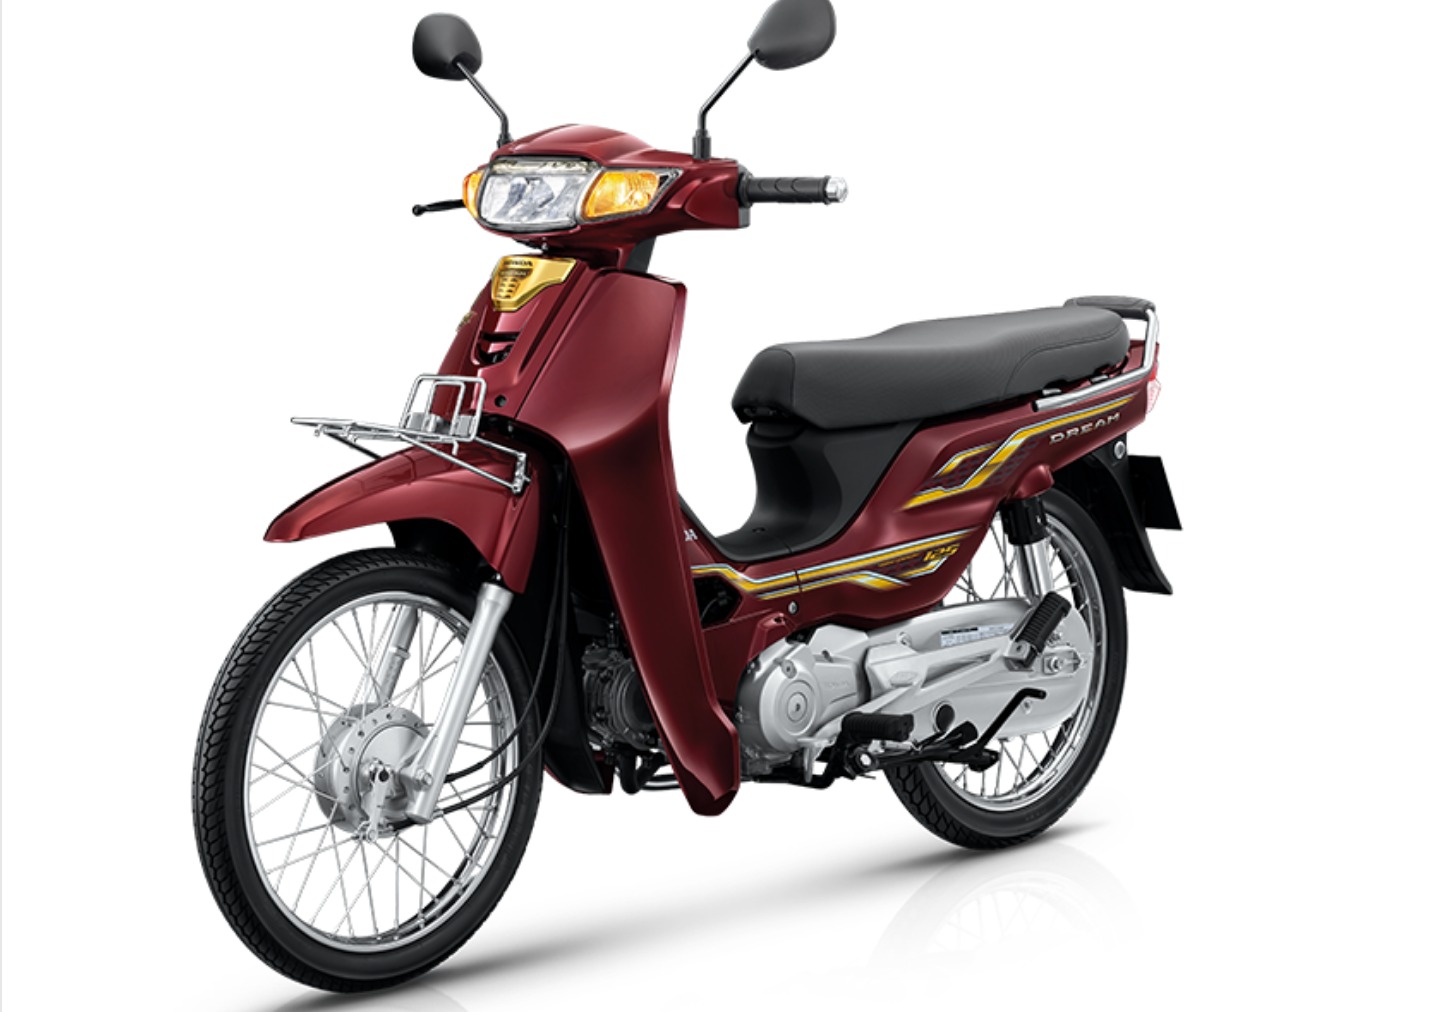 Honda Dream 125 mới sắp được ra mắt tại Việt Nam